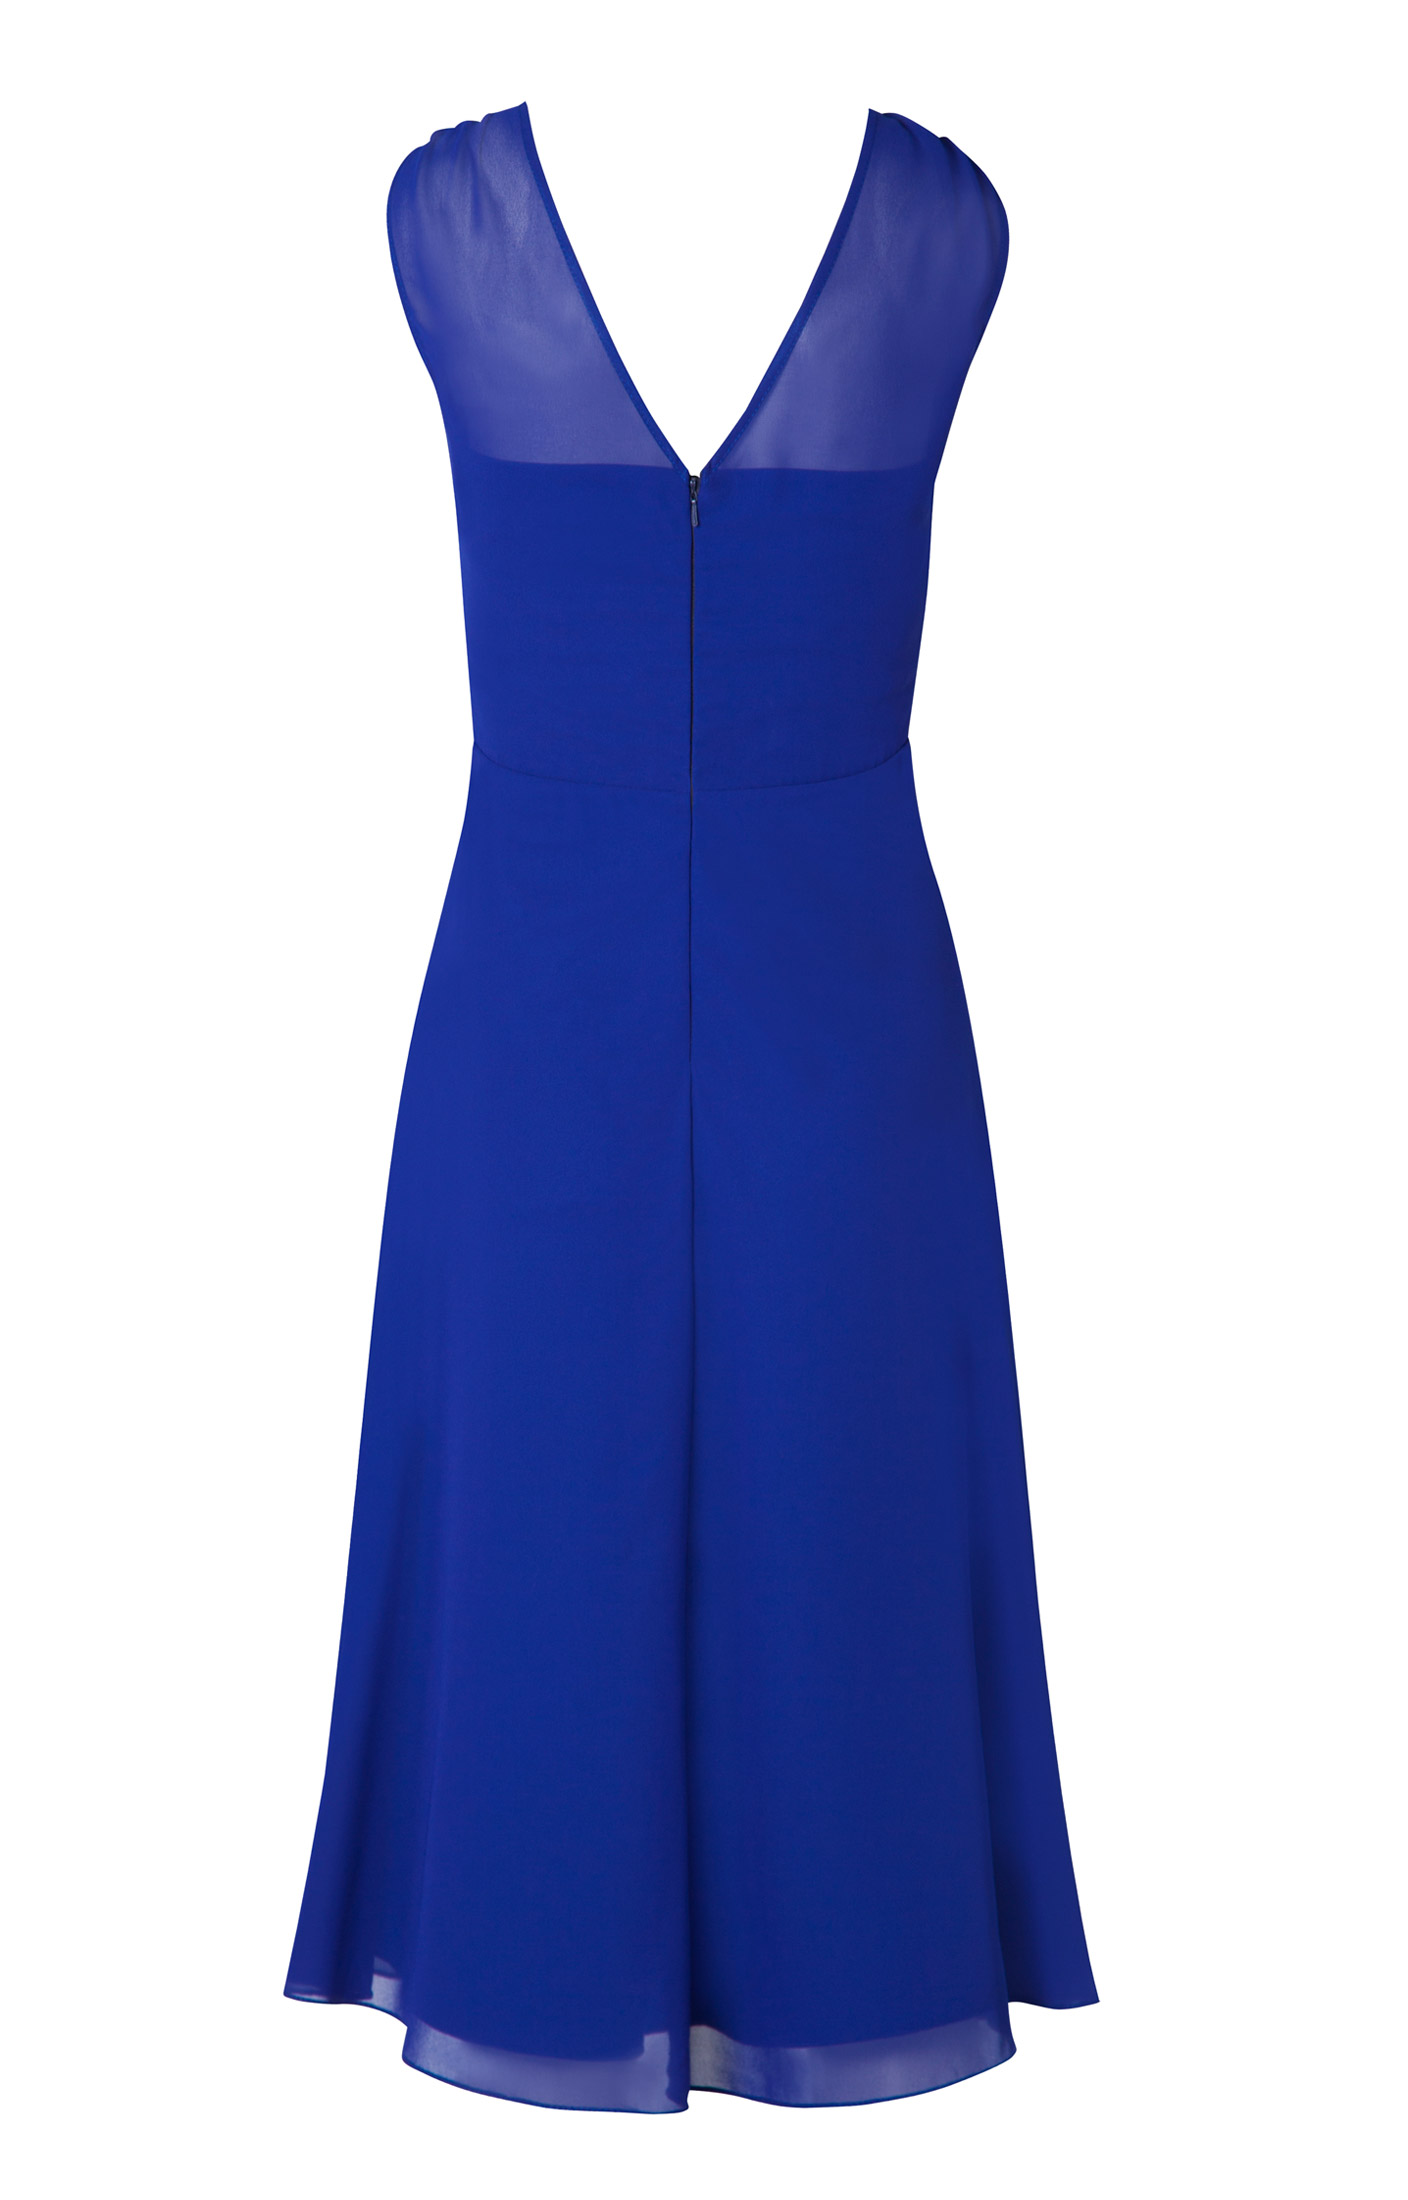 Cobalt Blue Long Dress Prom Dress Evening Dress, Women's Fashion, Dresses &  Sets, Evening Dresses & Gowns on Carousell